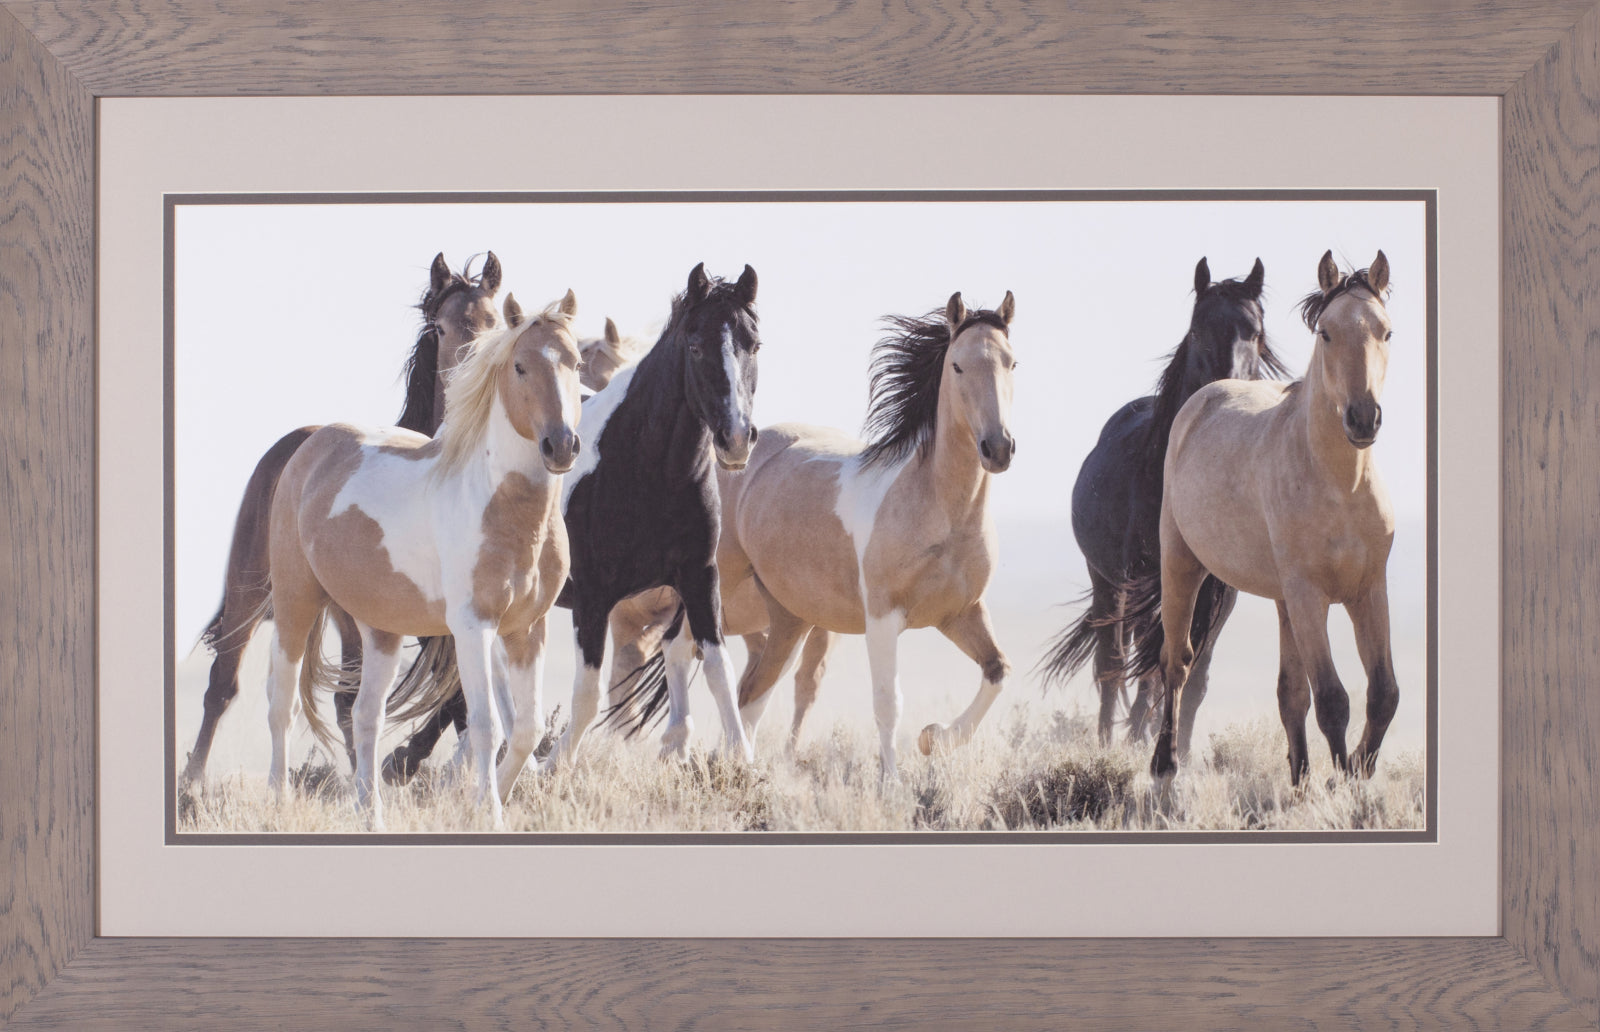 Art Effects Horses In The Wild Wall Art by Carol Walker